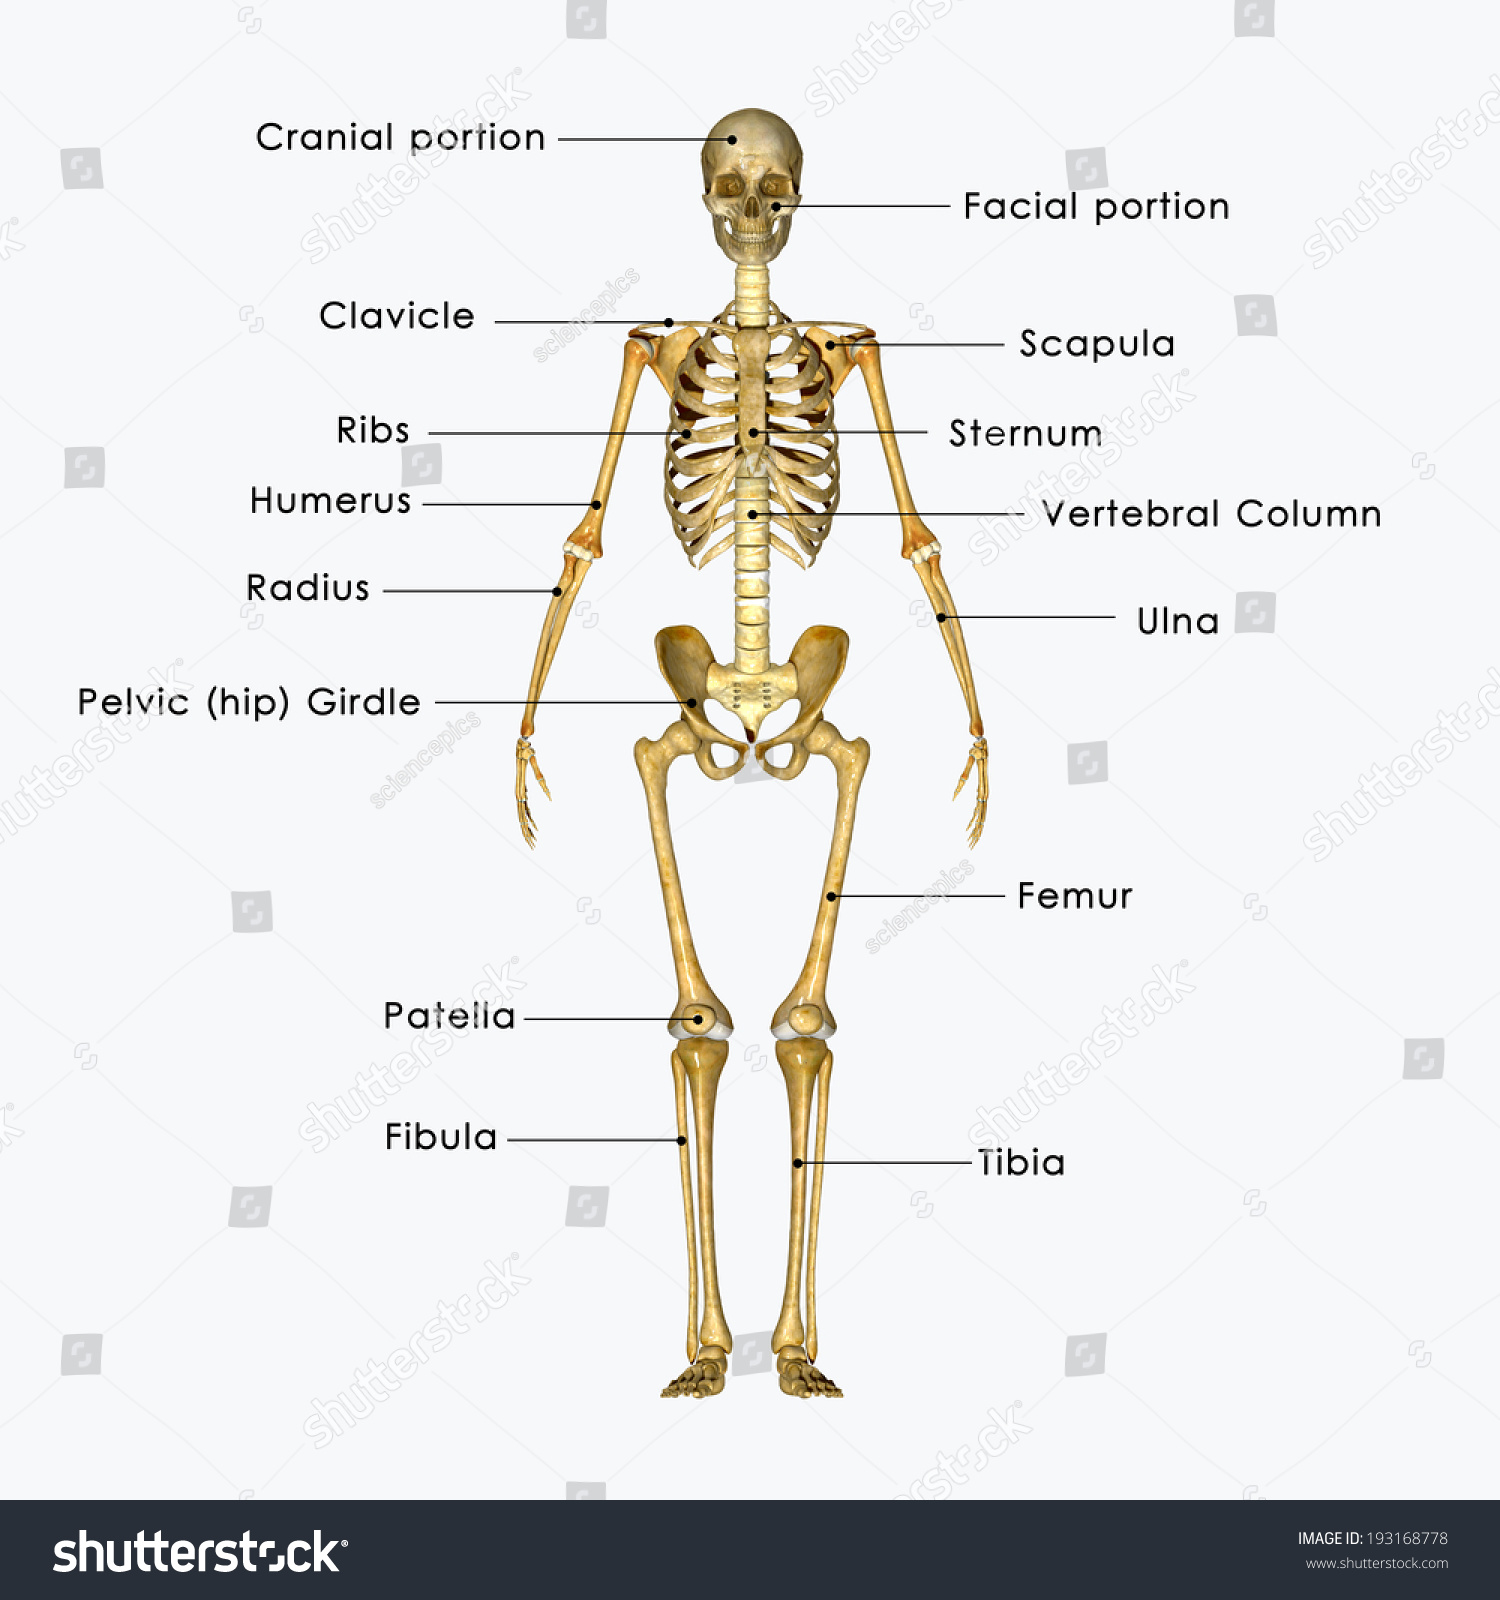 Skeleton Stock Photo 193168778 : Shutterstock